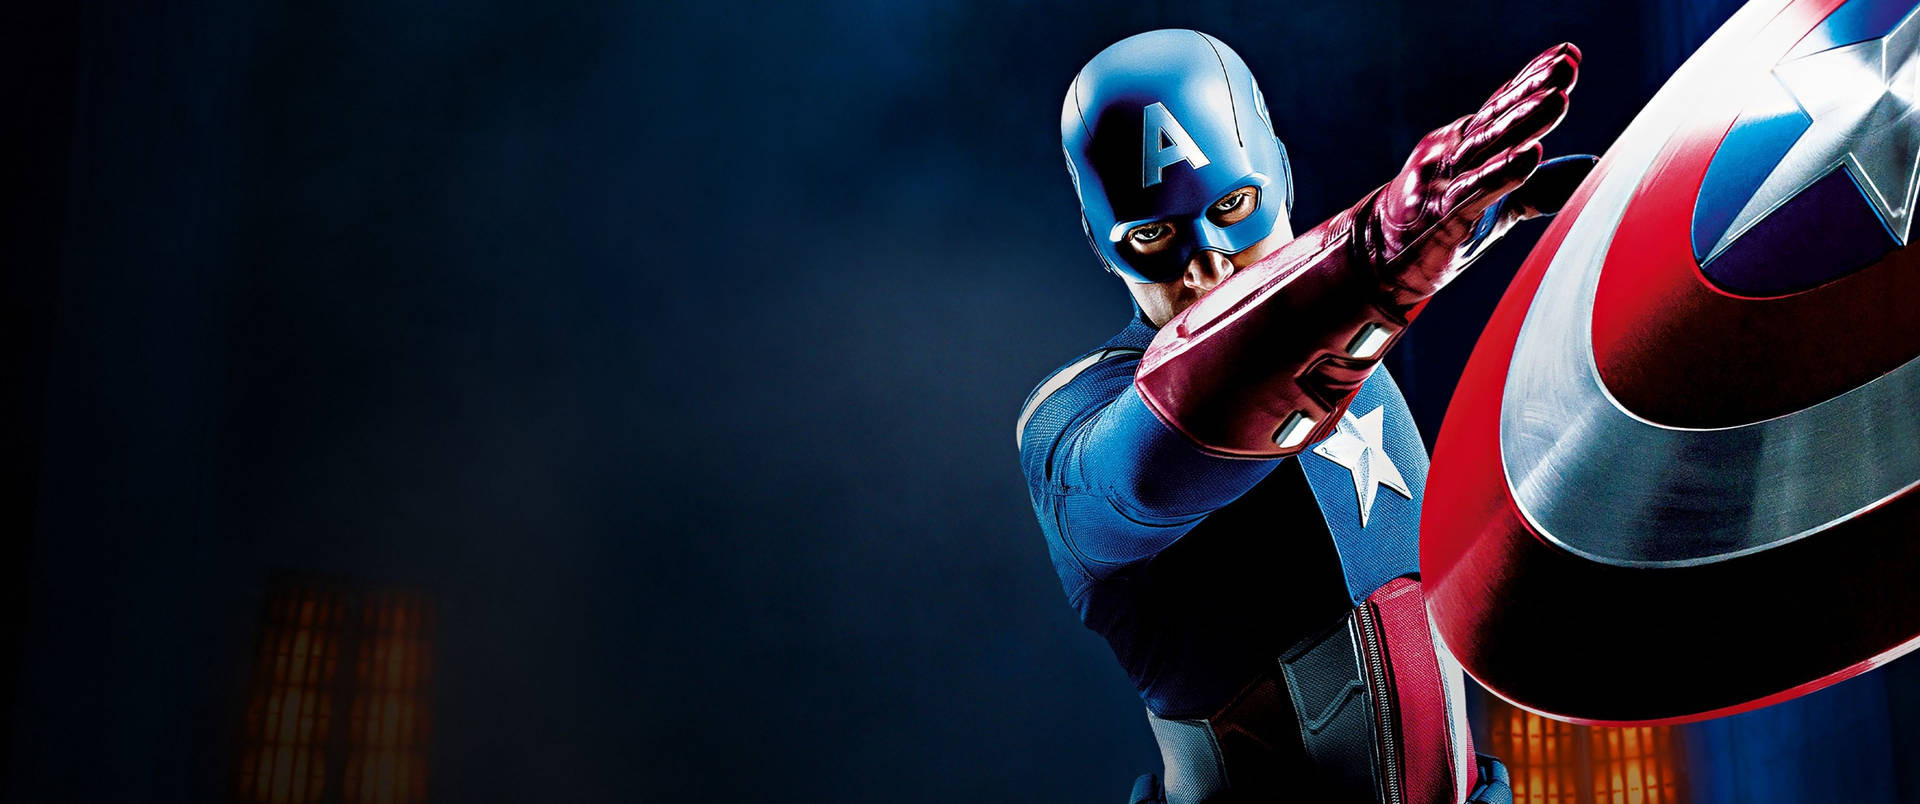 Captain America Superhero Shield Attack Background